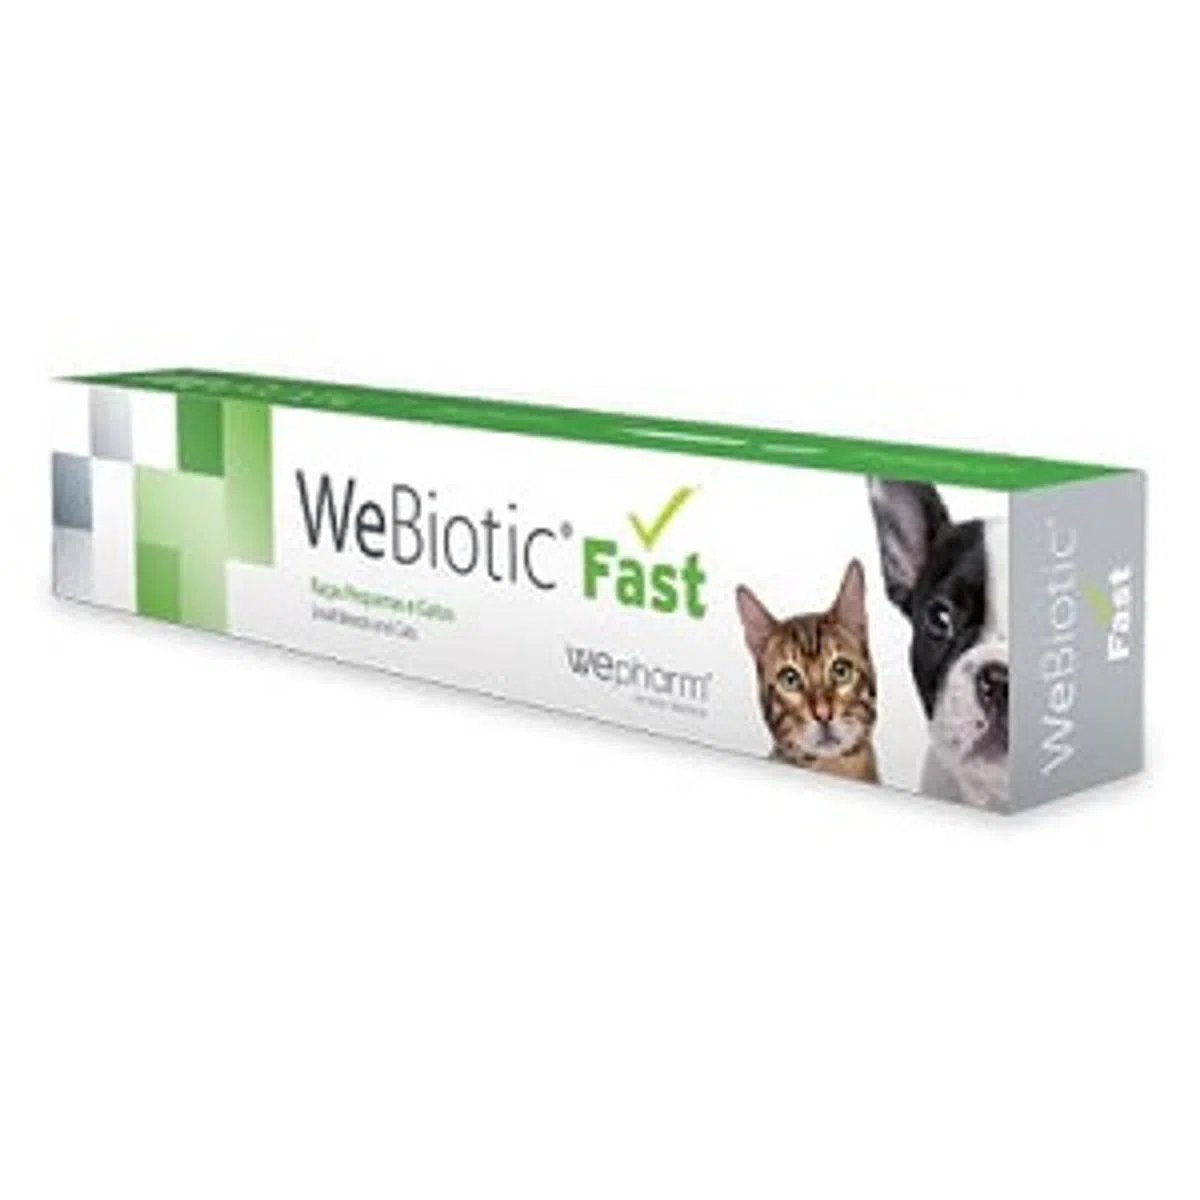 WEPHARM WeBiotic Fast, suplimente digestive câini și pisici, pastă orală, 60ml 60ml